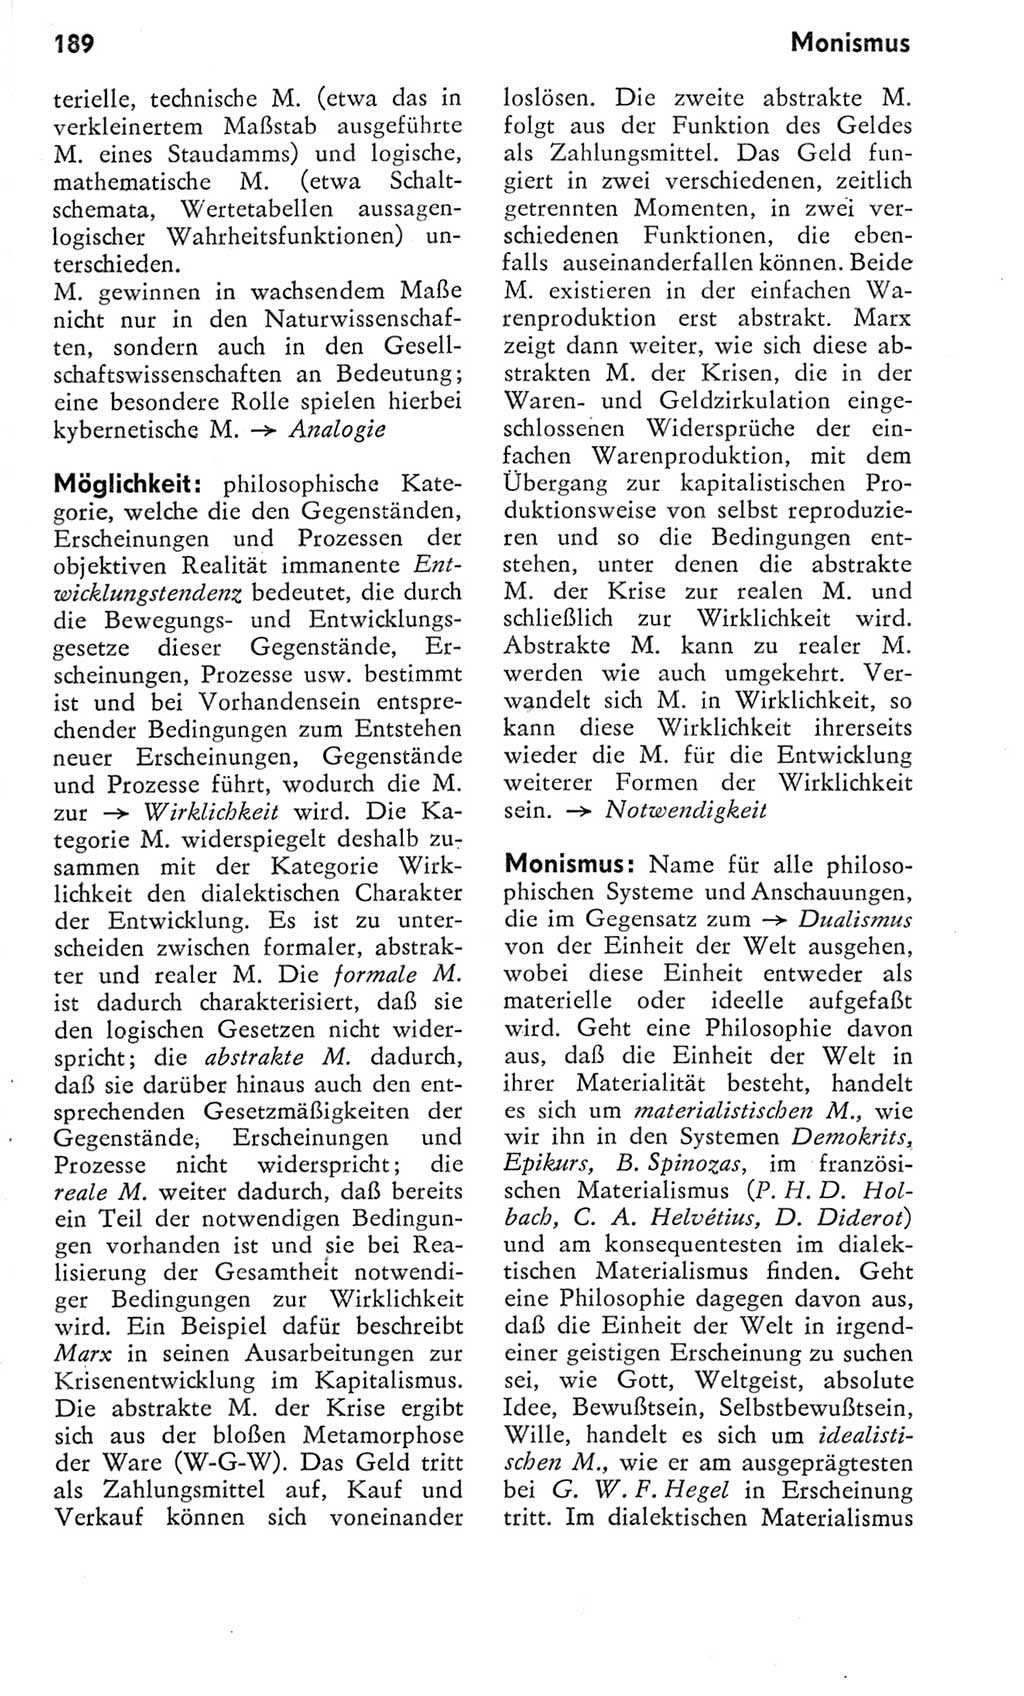 Kleines Wörterbuch der marxistisch-leninistischen Philosophie [Deutsche Demokratische Republik (DDR)] 1975, Seite 189 (Kl. Wb. ML Phil. DDR 1975, S. 189)